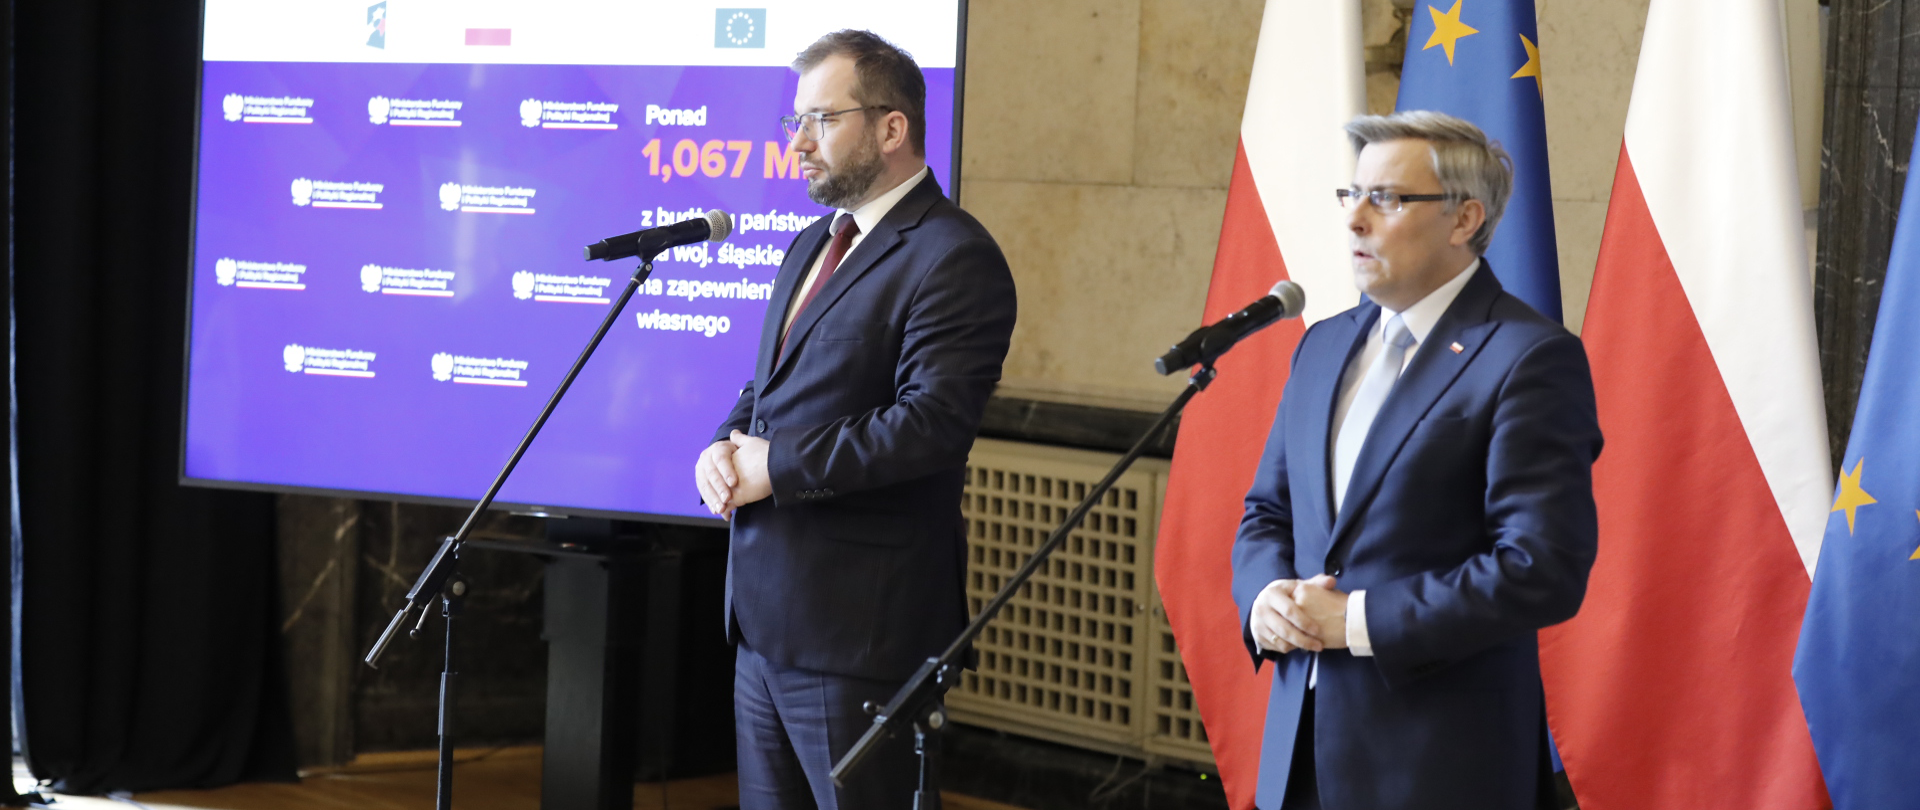 Minister Grzegorz Puda i wojewoda Jarosław Wieczorek przed mikrofonami. Za nimi flagi PL i UE oraz ekran.